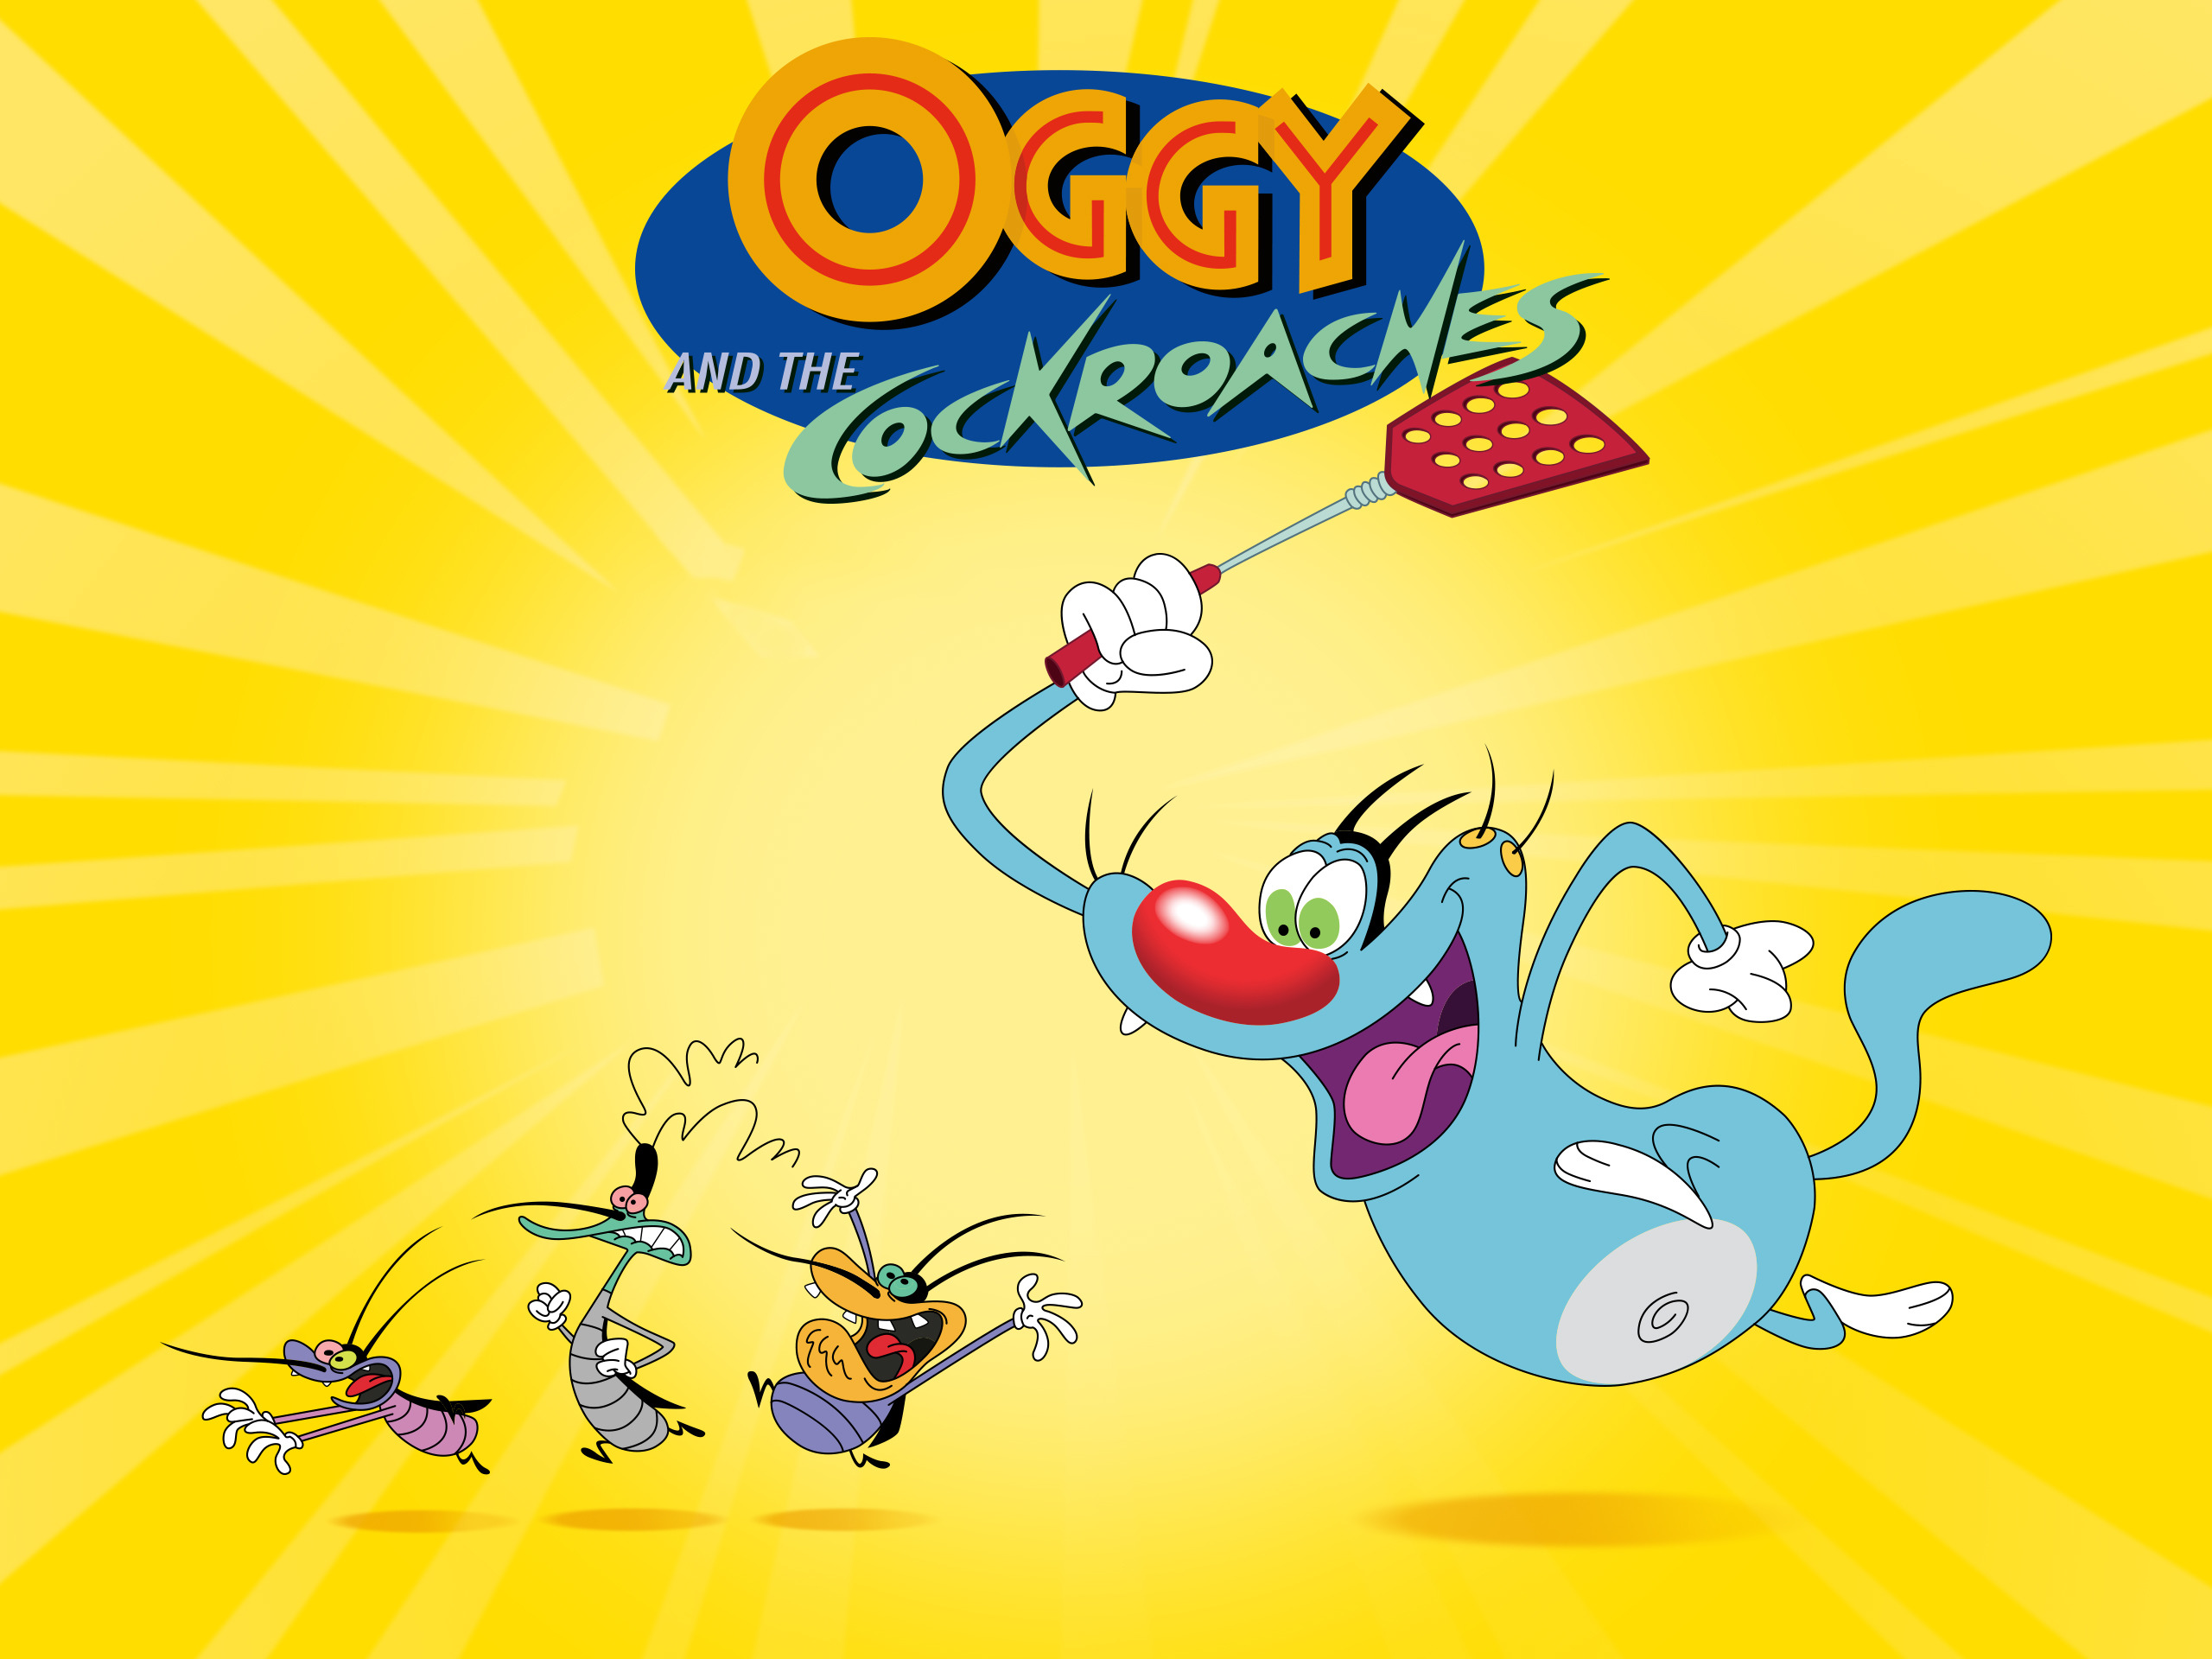 Nhiều người bất ngờ vì bộ phim hoạt hình Oggy and the Cockroaches được vẽ  bởi các họa sĩ Việt